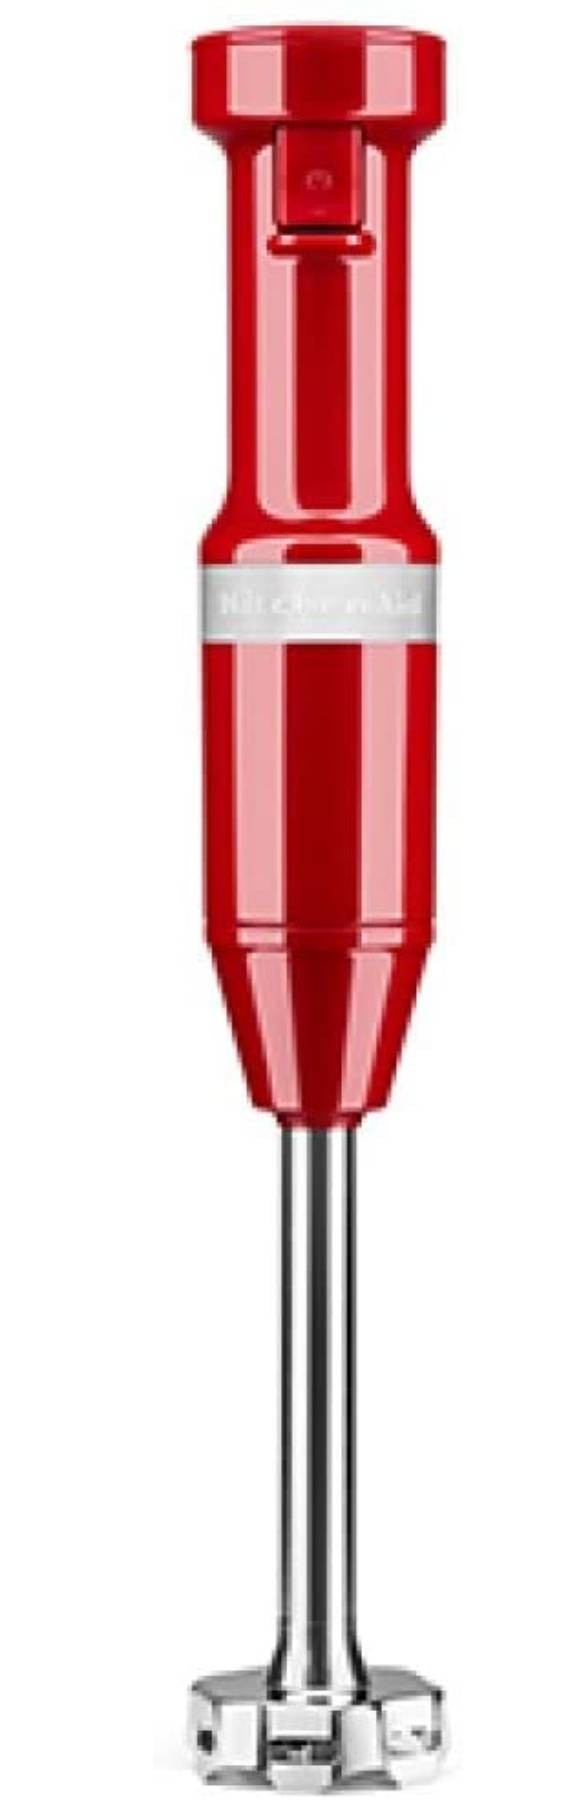 KITCHENAID Mixeur plongeant avec accessoires Rouge Empire - 5KHBV83EER